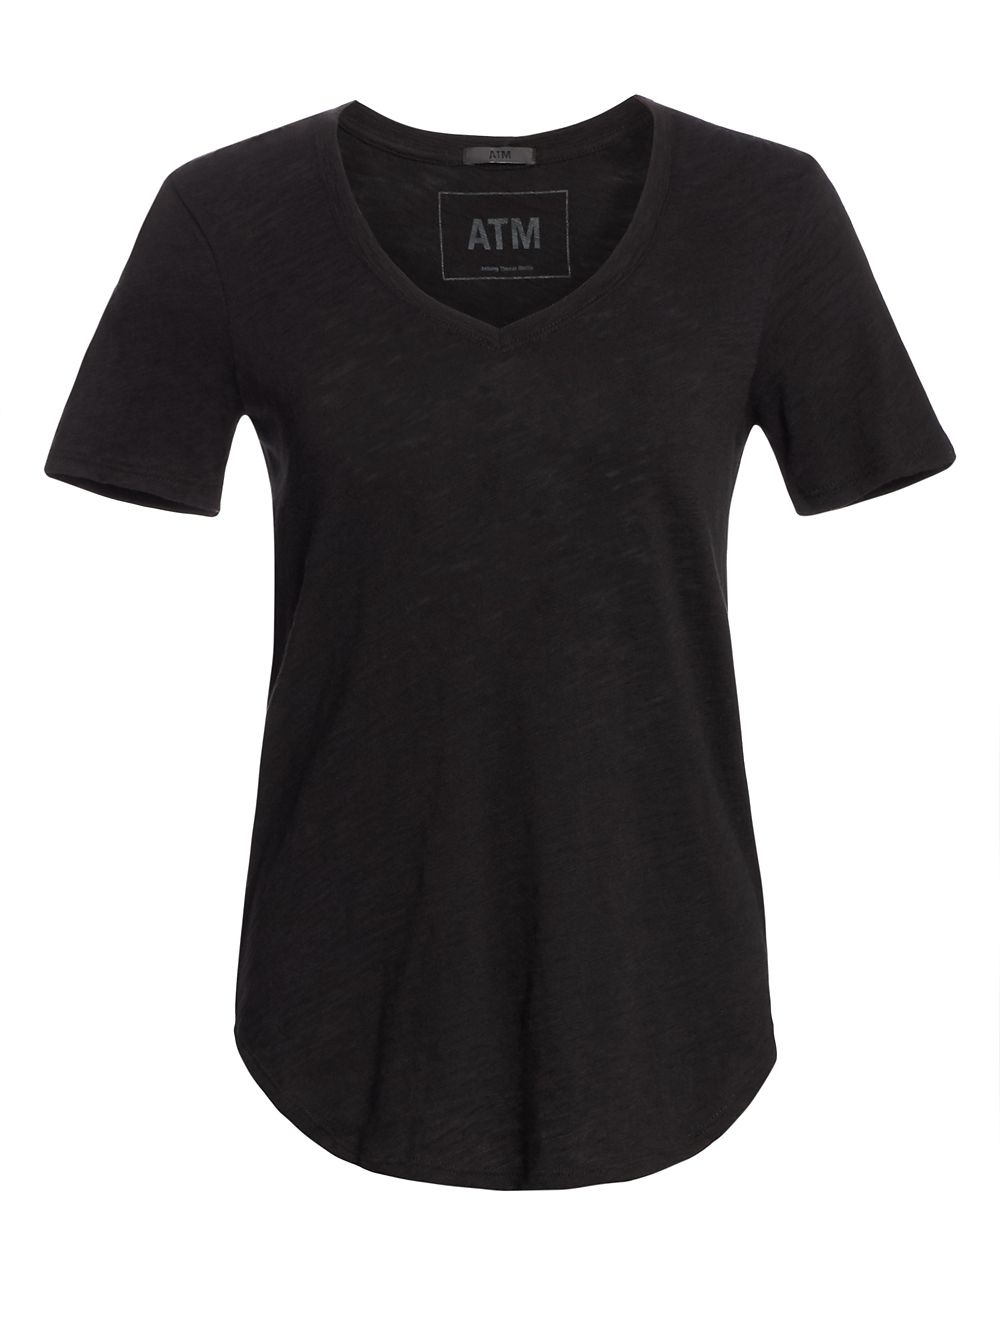 Хлопковая футболка с V-образным вырезом ATM Anthony Thomas Melillo, черный футболка с коротким рукавом и v образным вырезом atm anthony thomas melillo